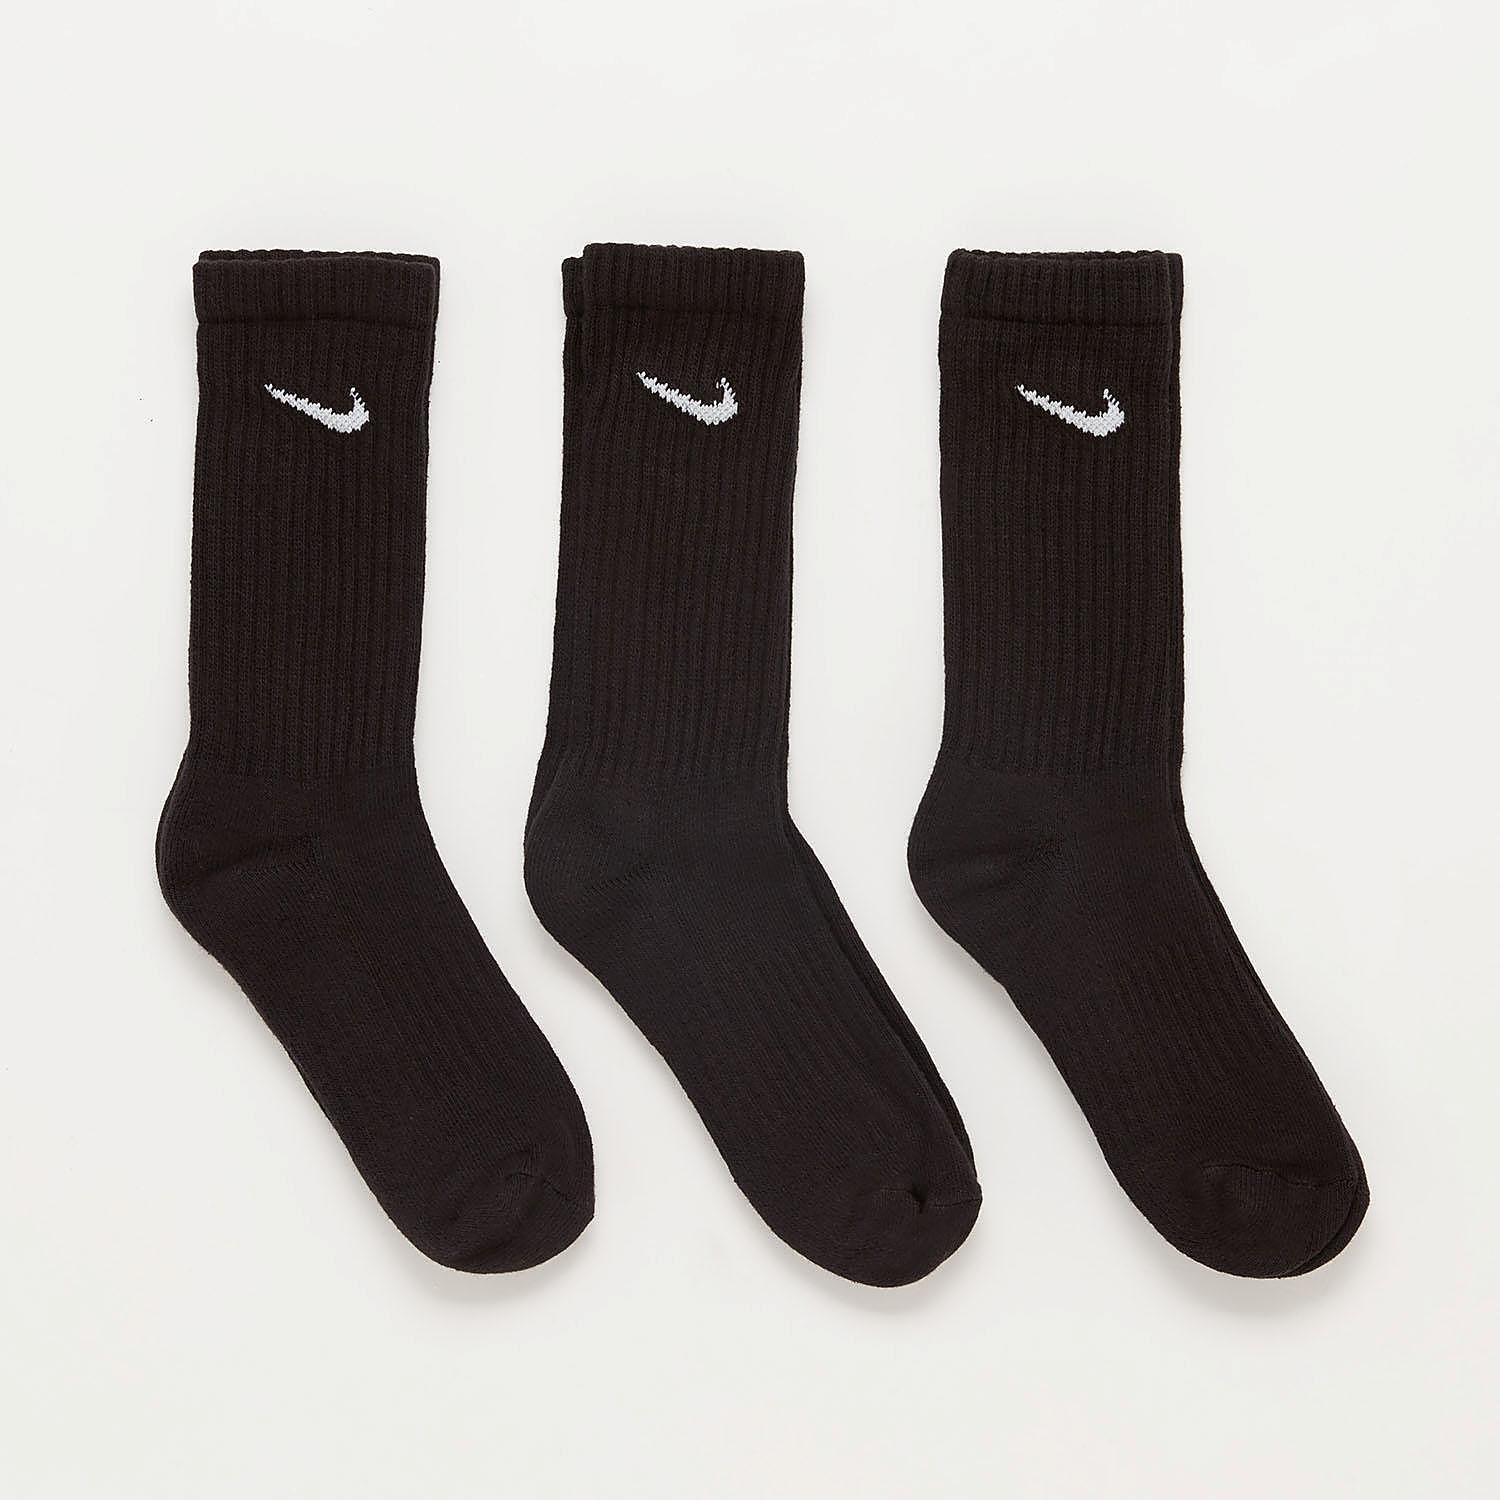 Nike Nike value cotton crew sportsokken 3-pack heren heren